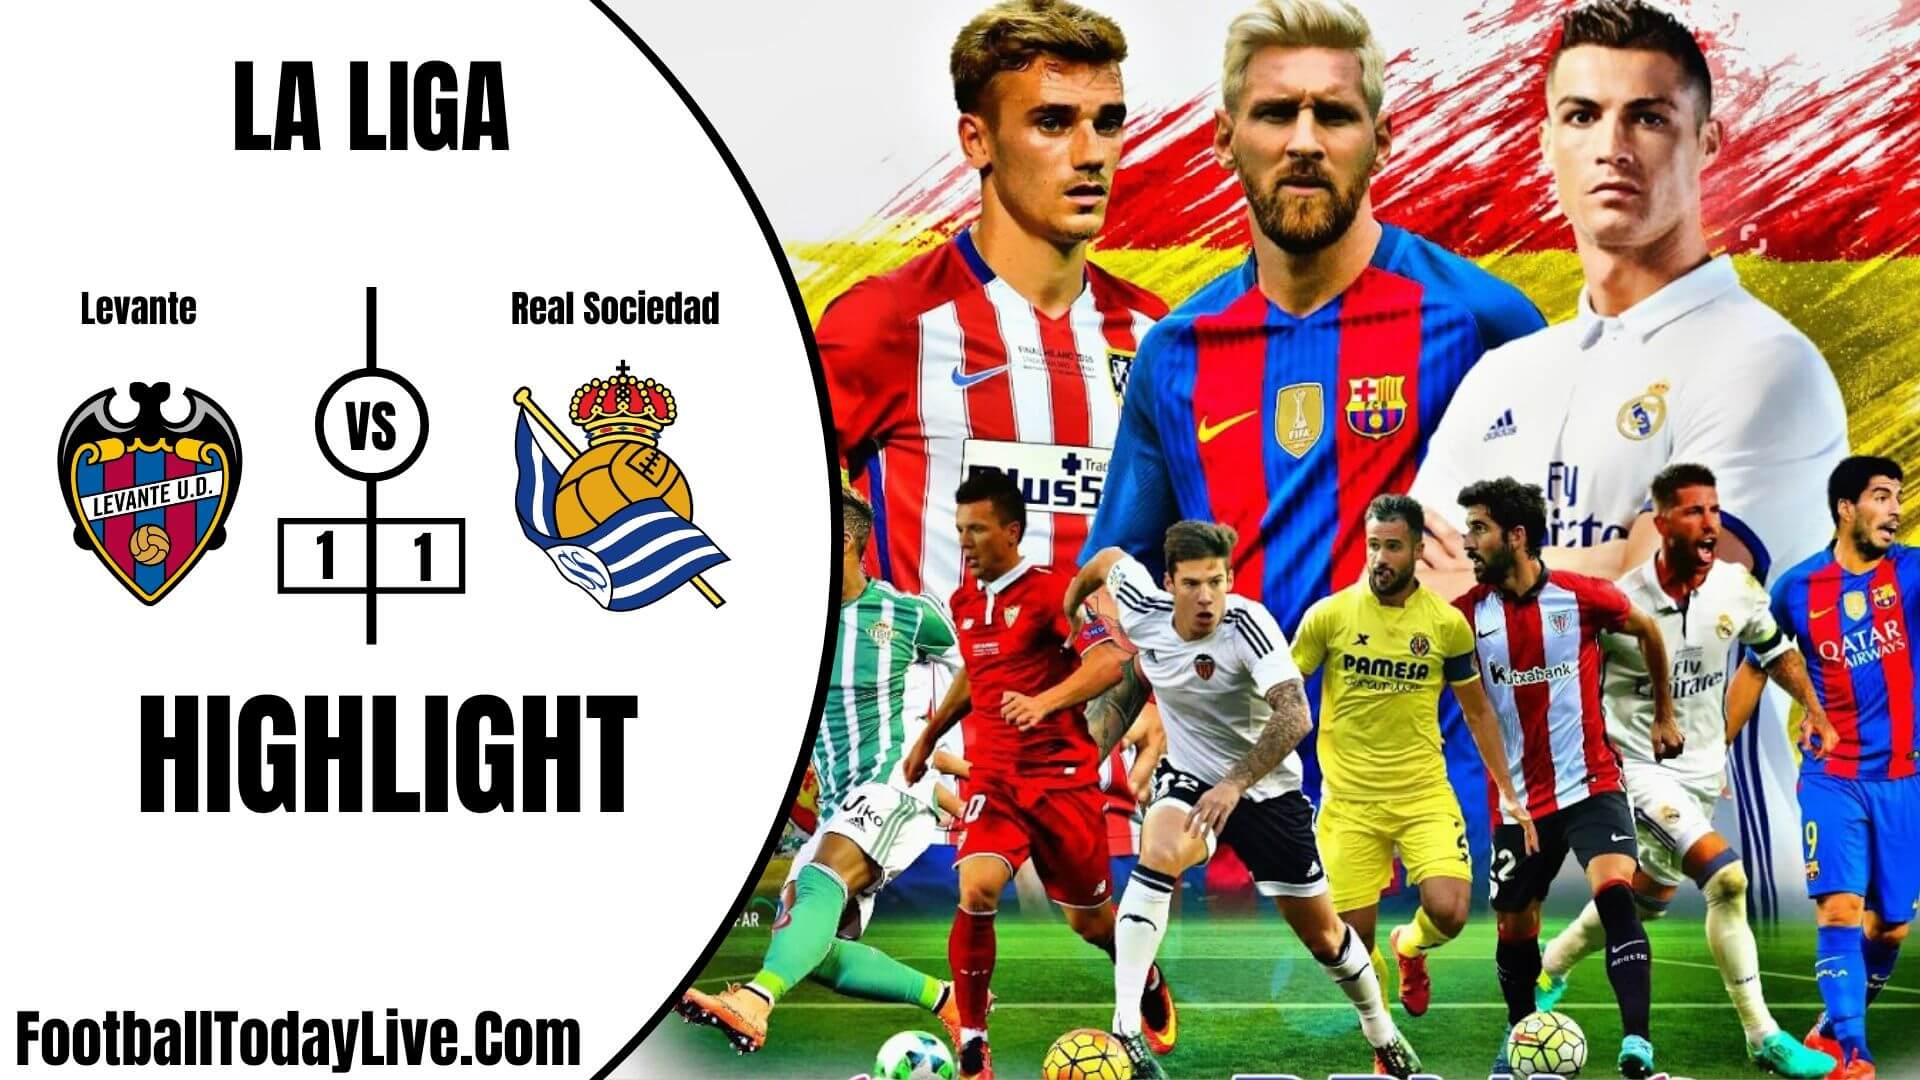 Levante Vs Real Sociedad Highlights 2020 La Liga Week 34